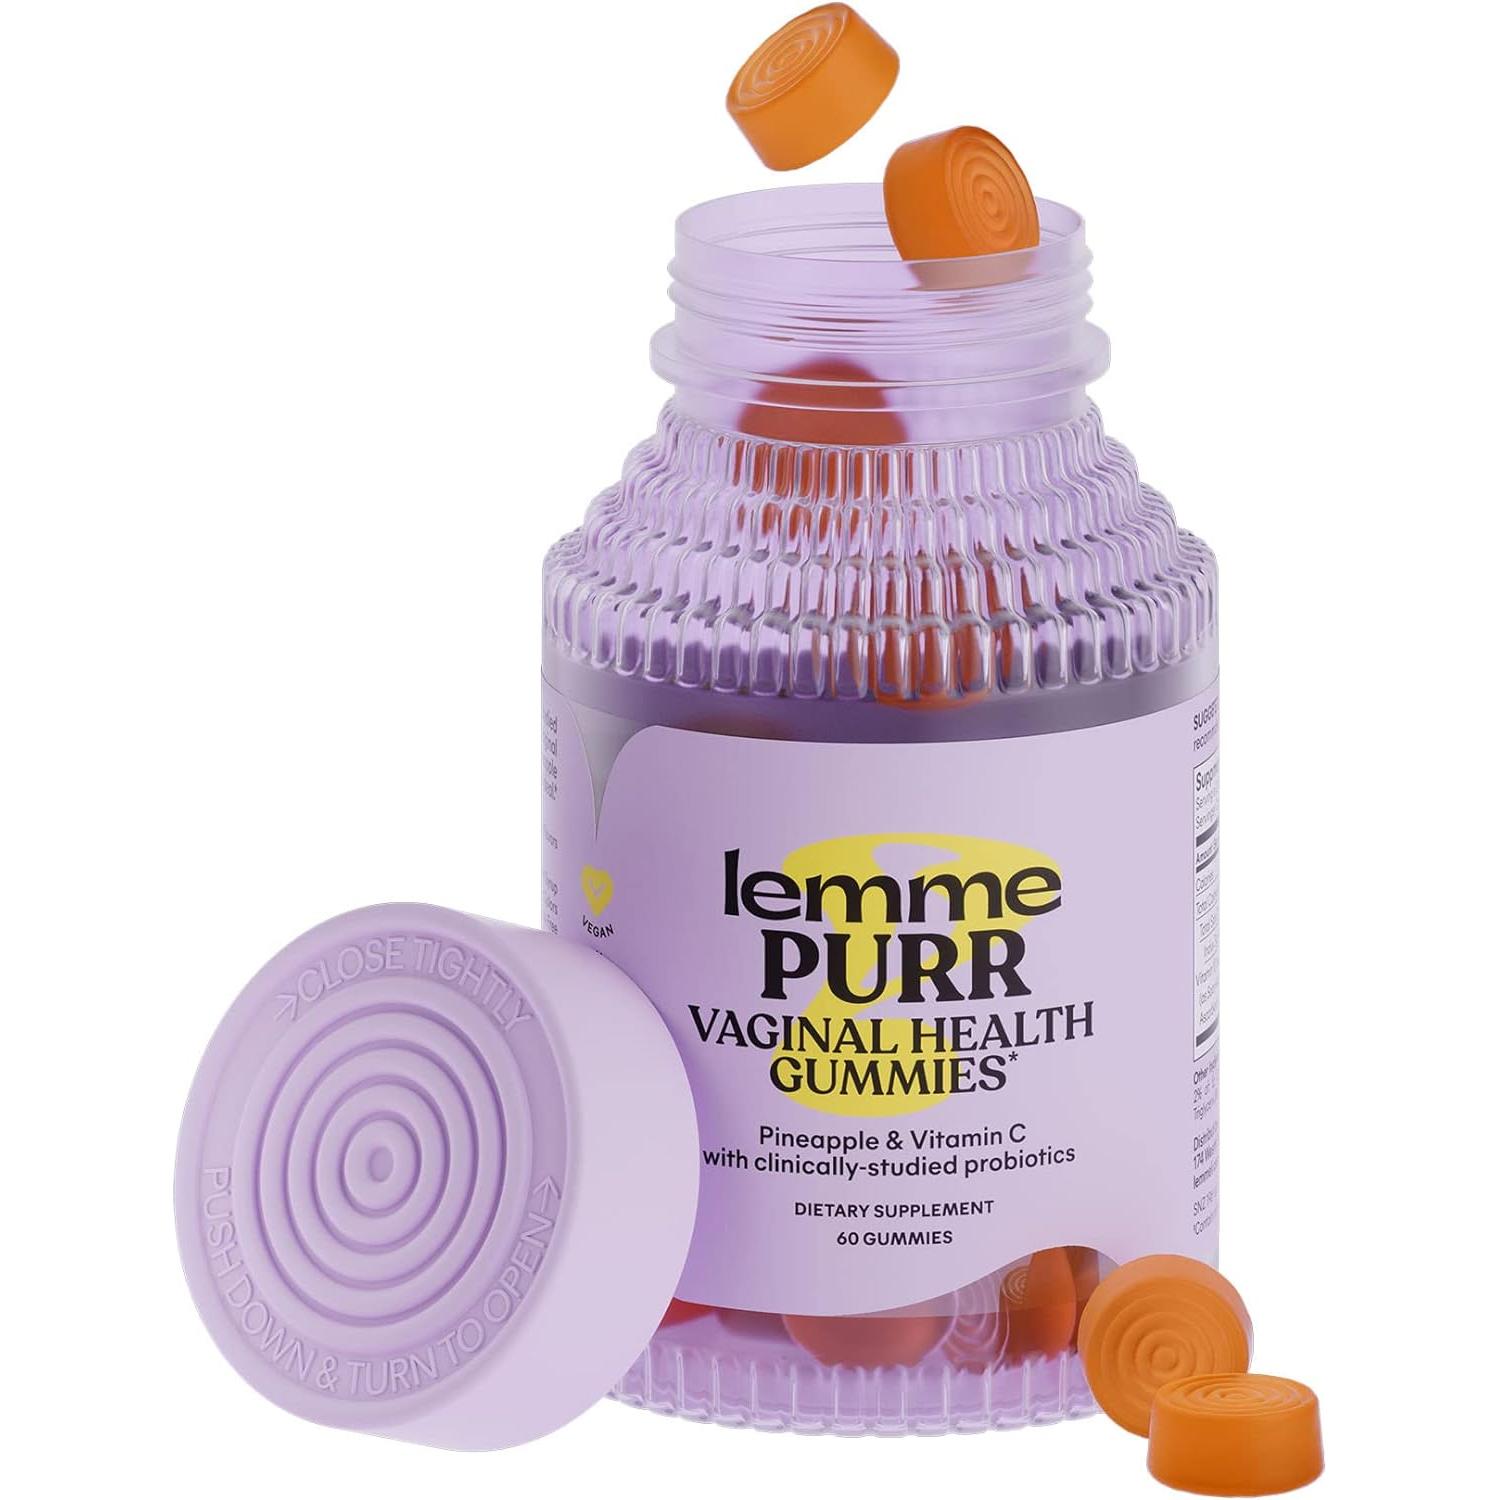 Lemme Purr Vaginal Probiotic Gummies for Women - Tasty Pineapple (60 Count)